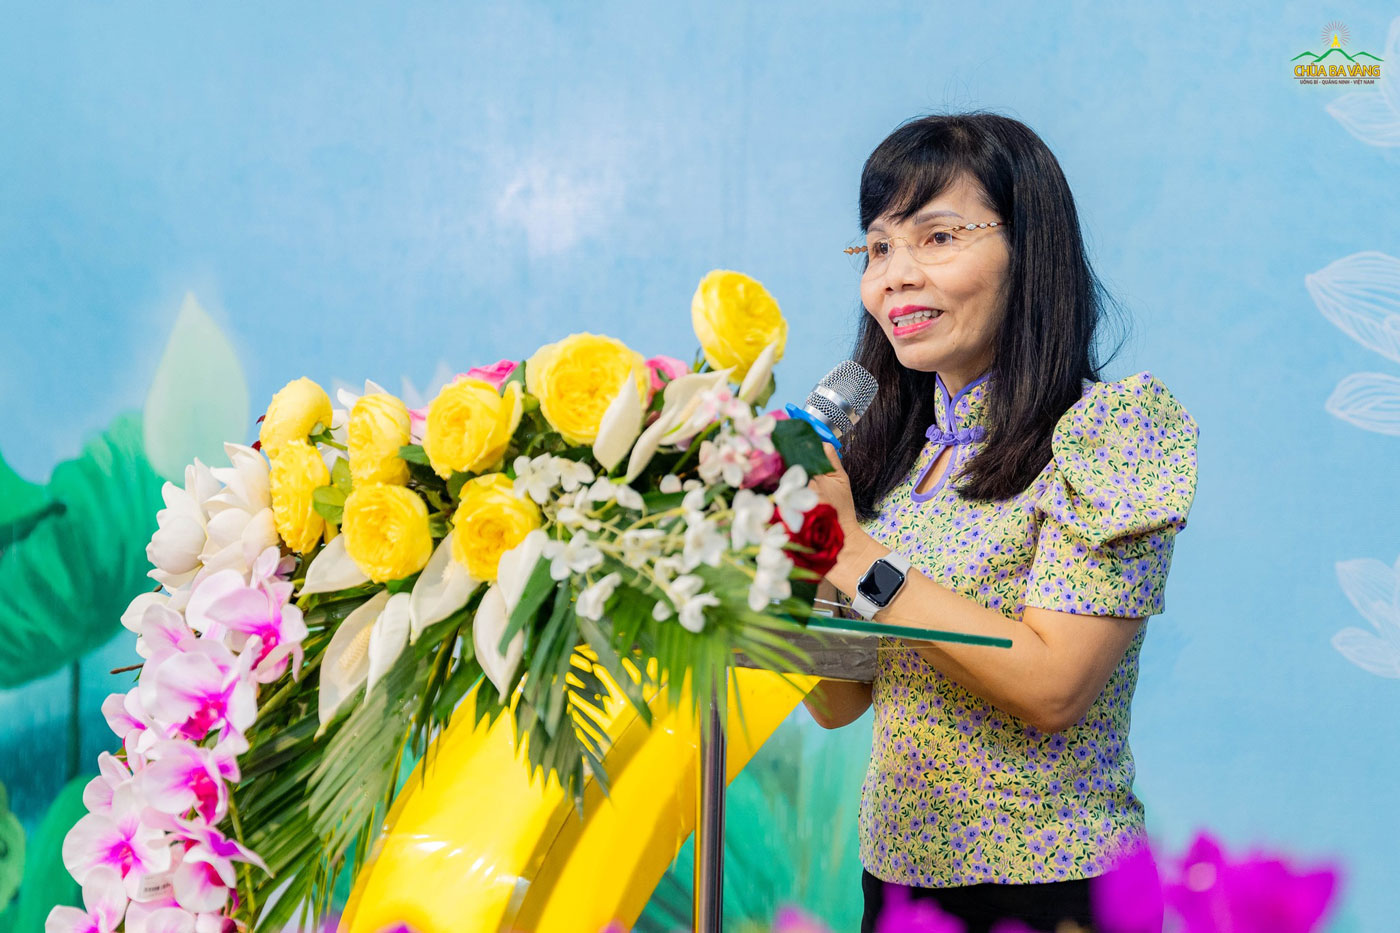 Bà Trần Thị Vân Hoa - Phó hiệu trưởng Trường Đại học Kinh tế Quốc dân phát biểu tại buổi tọa đàm “Lãnh đạo và tầm nhìn”